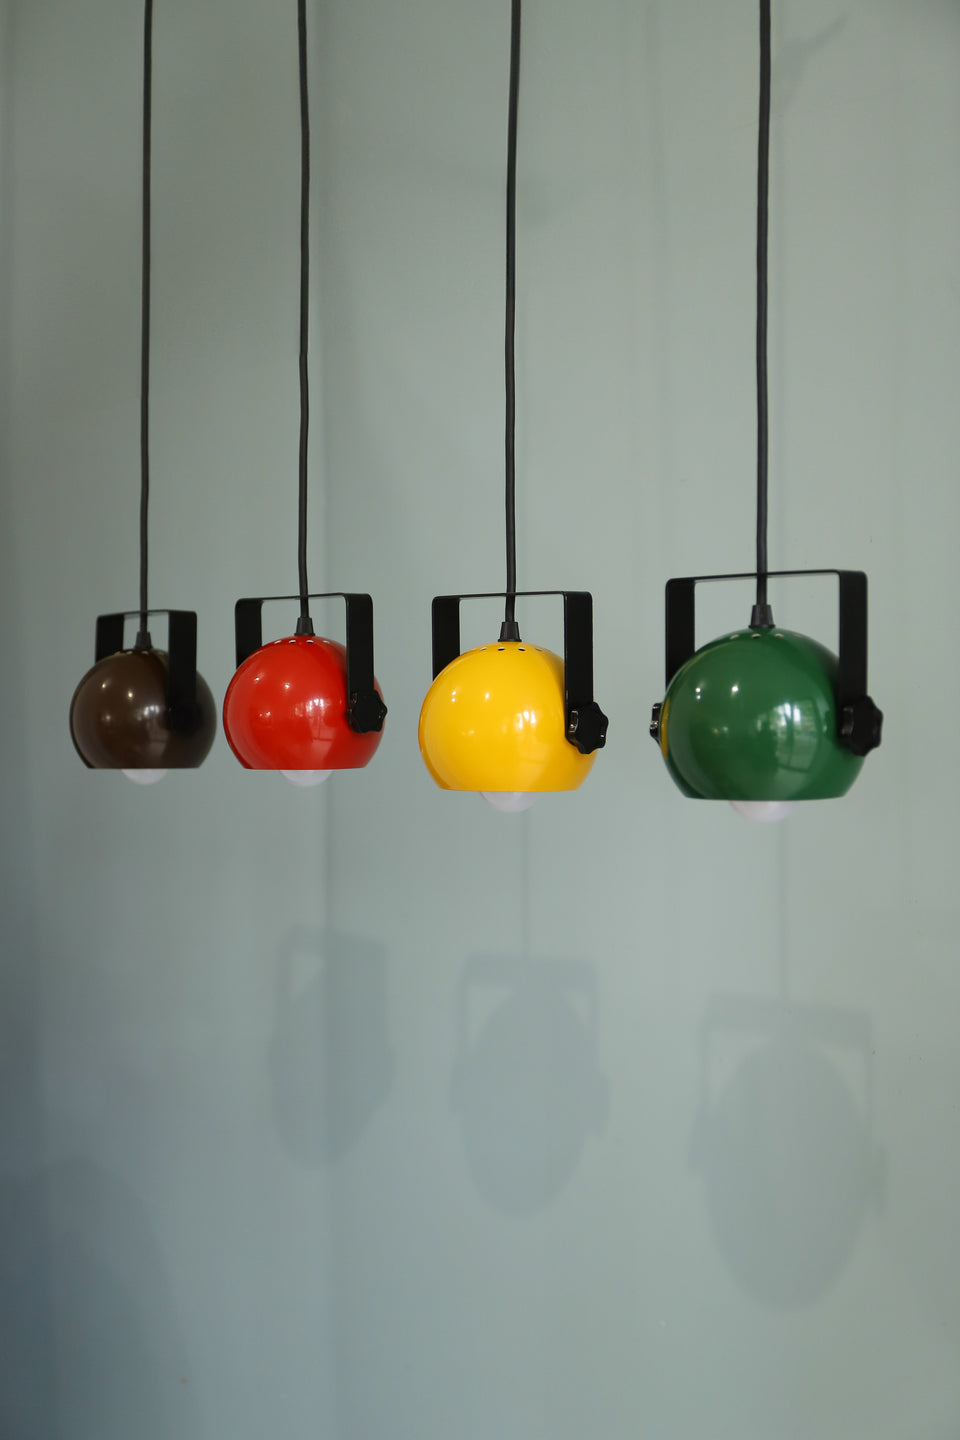 Danish Vintage Abo Randers Pendant Ball Lamp/デンマークヴィンテージ アボランダース ボールランプ ペンダントライト